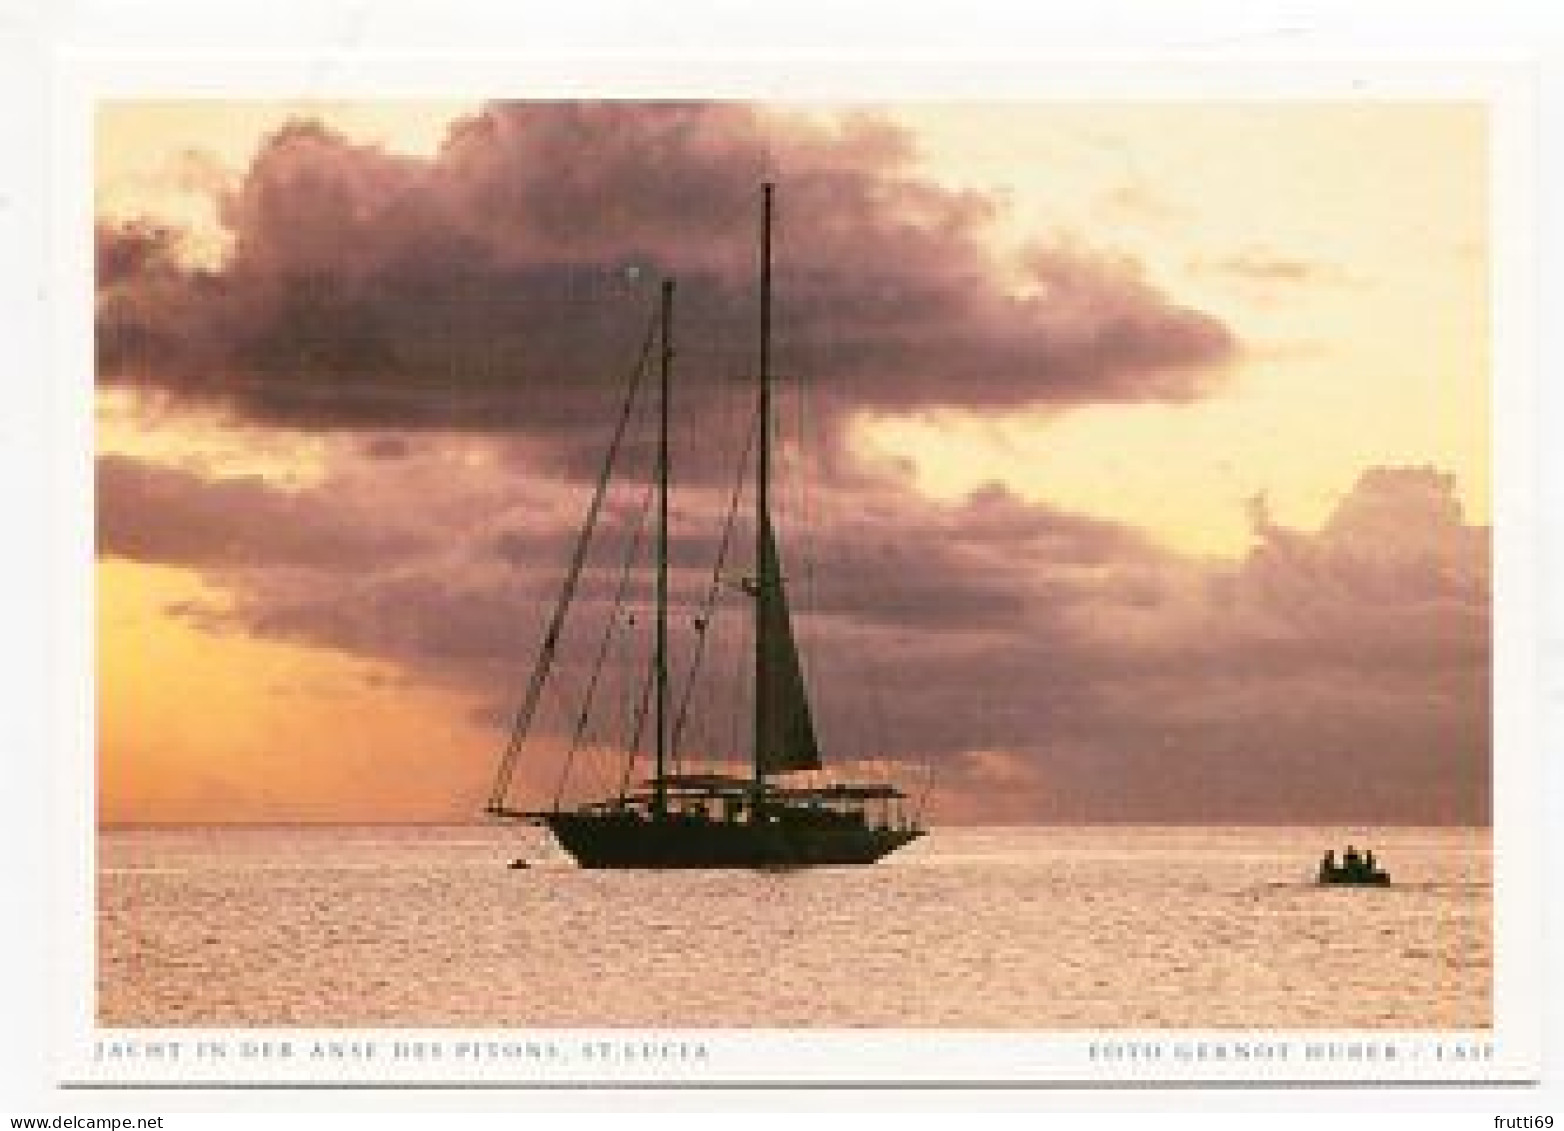 AK 158516 ST. LUCIA - Jacht In Der Anse Des Pitons - St. Lucia